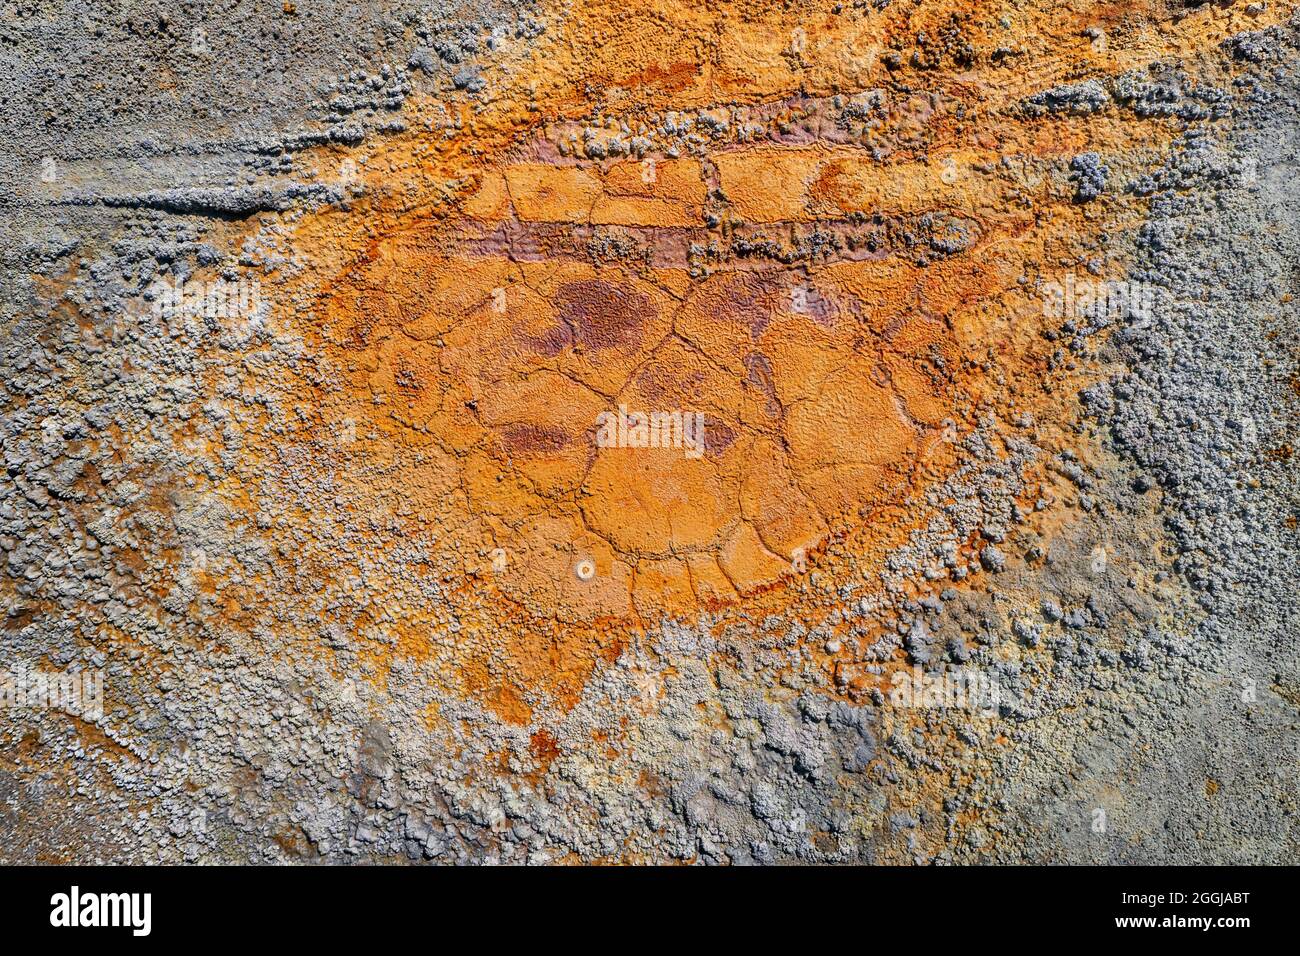 Piscine rouillée sèche avec traces de pneus et texture de terre grise rugueuse contaminée provenant de la mine de pyrite abandonnée Banque D'Images